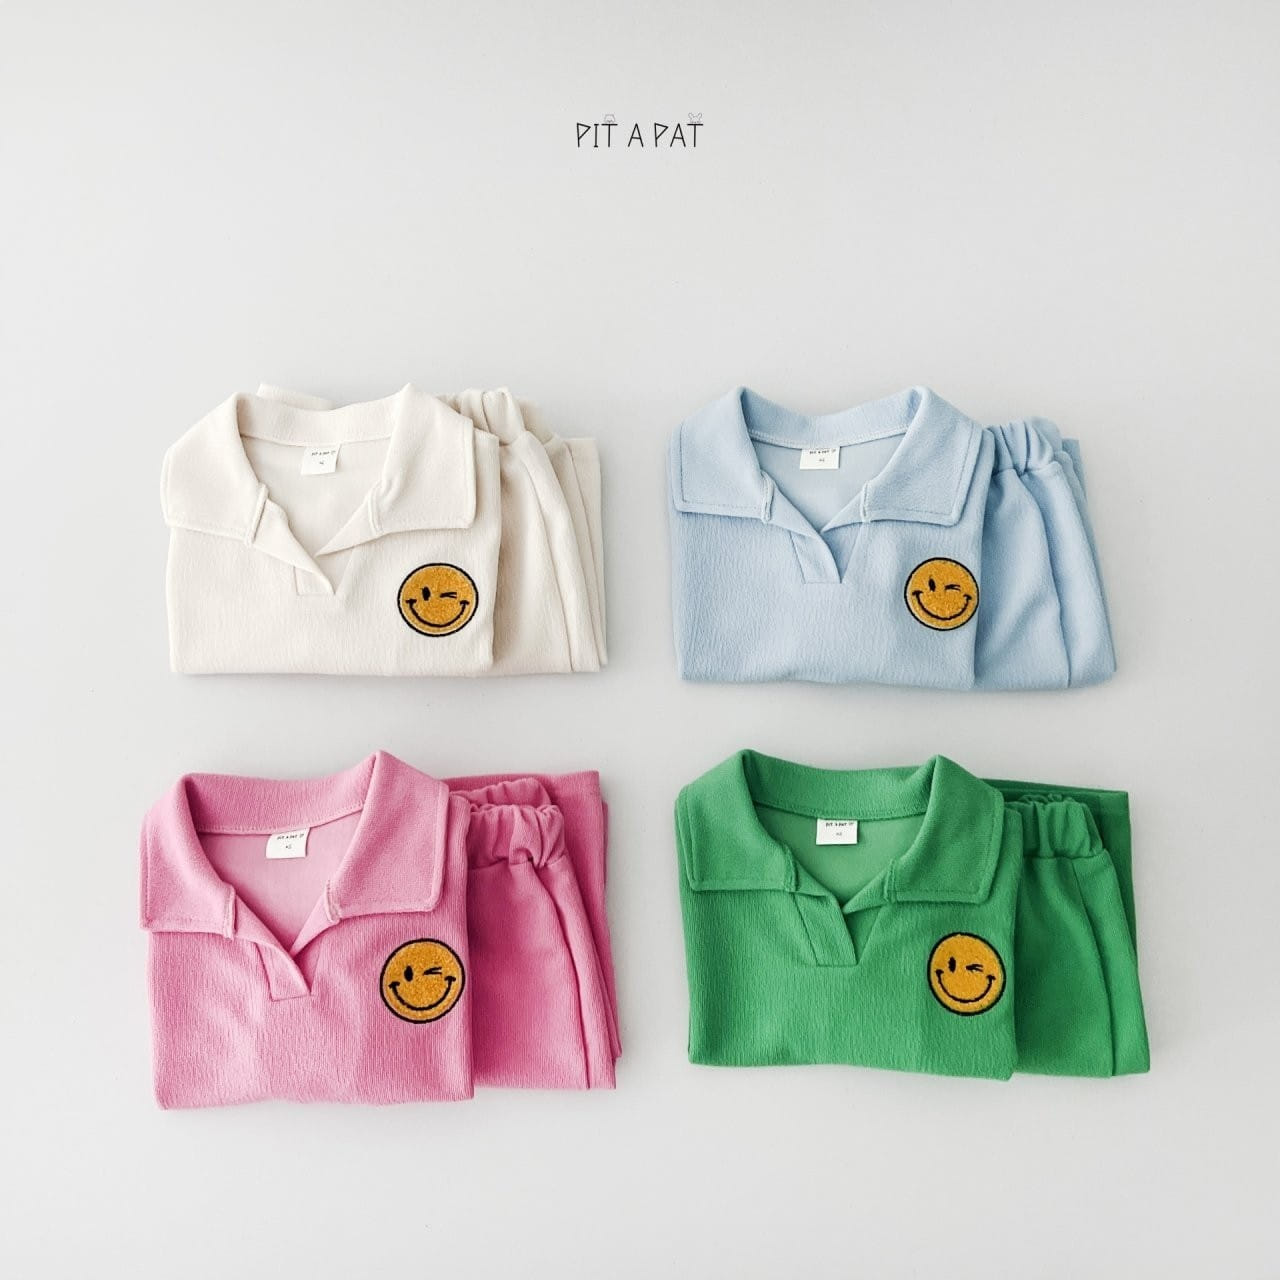 Pitapat - Korean Children Fashion - #stylishchildhood - Smiley Terry Top Bottom Set - 11